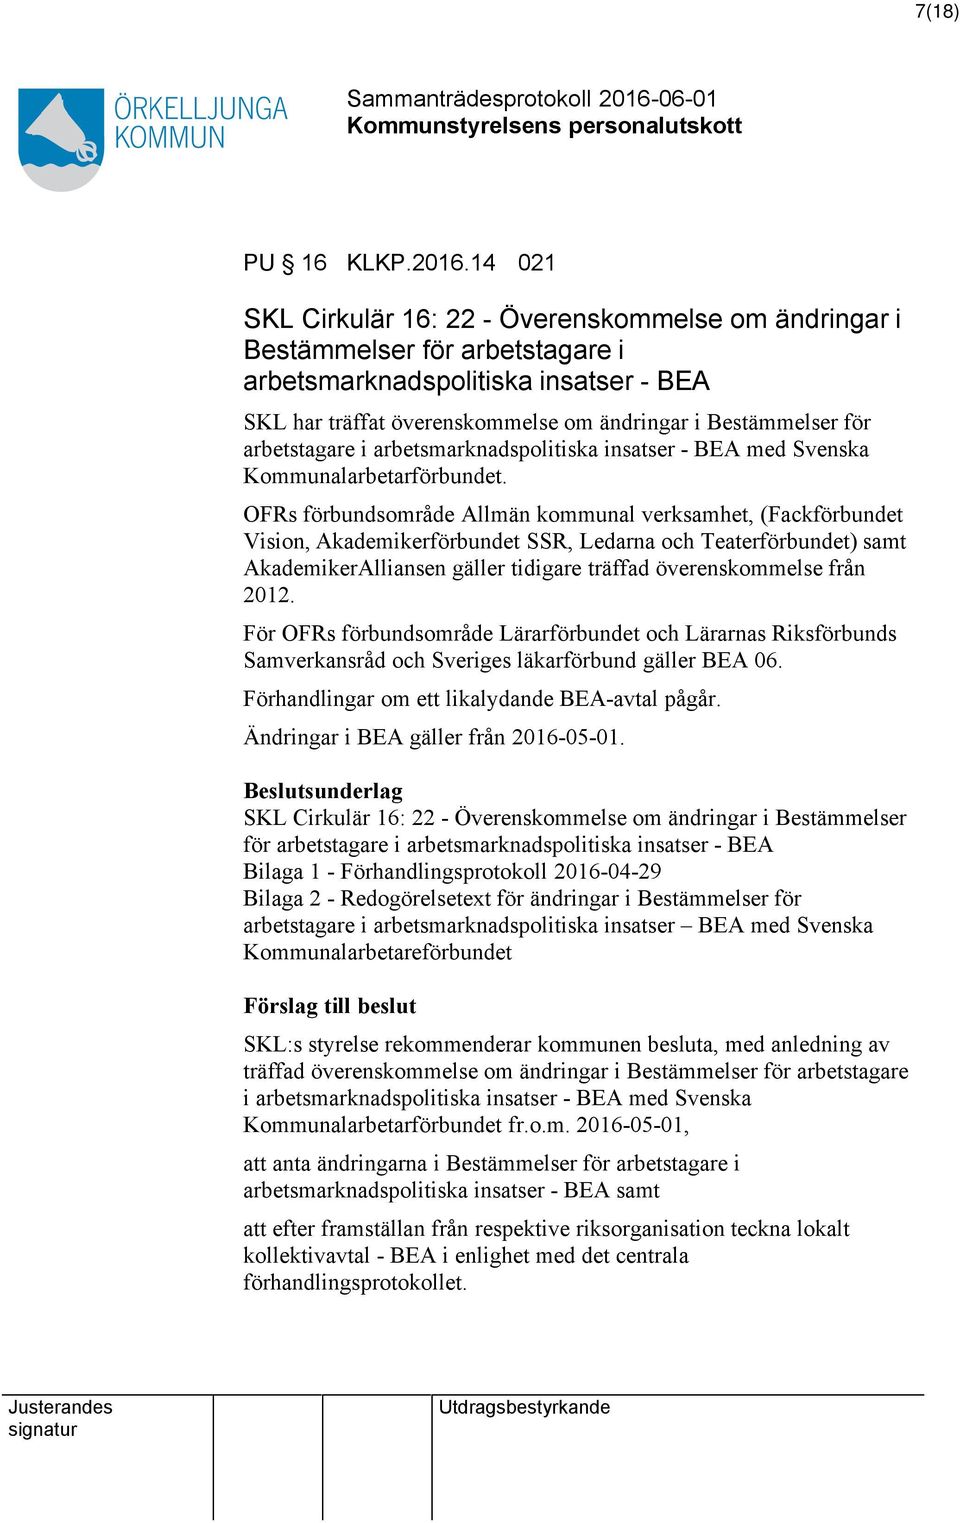 arbetstagare i arbetsmarknadspolitiska insatser - BEA med Svenska Kommunalarbetarförbundet.